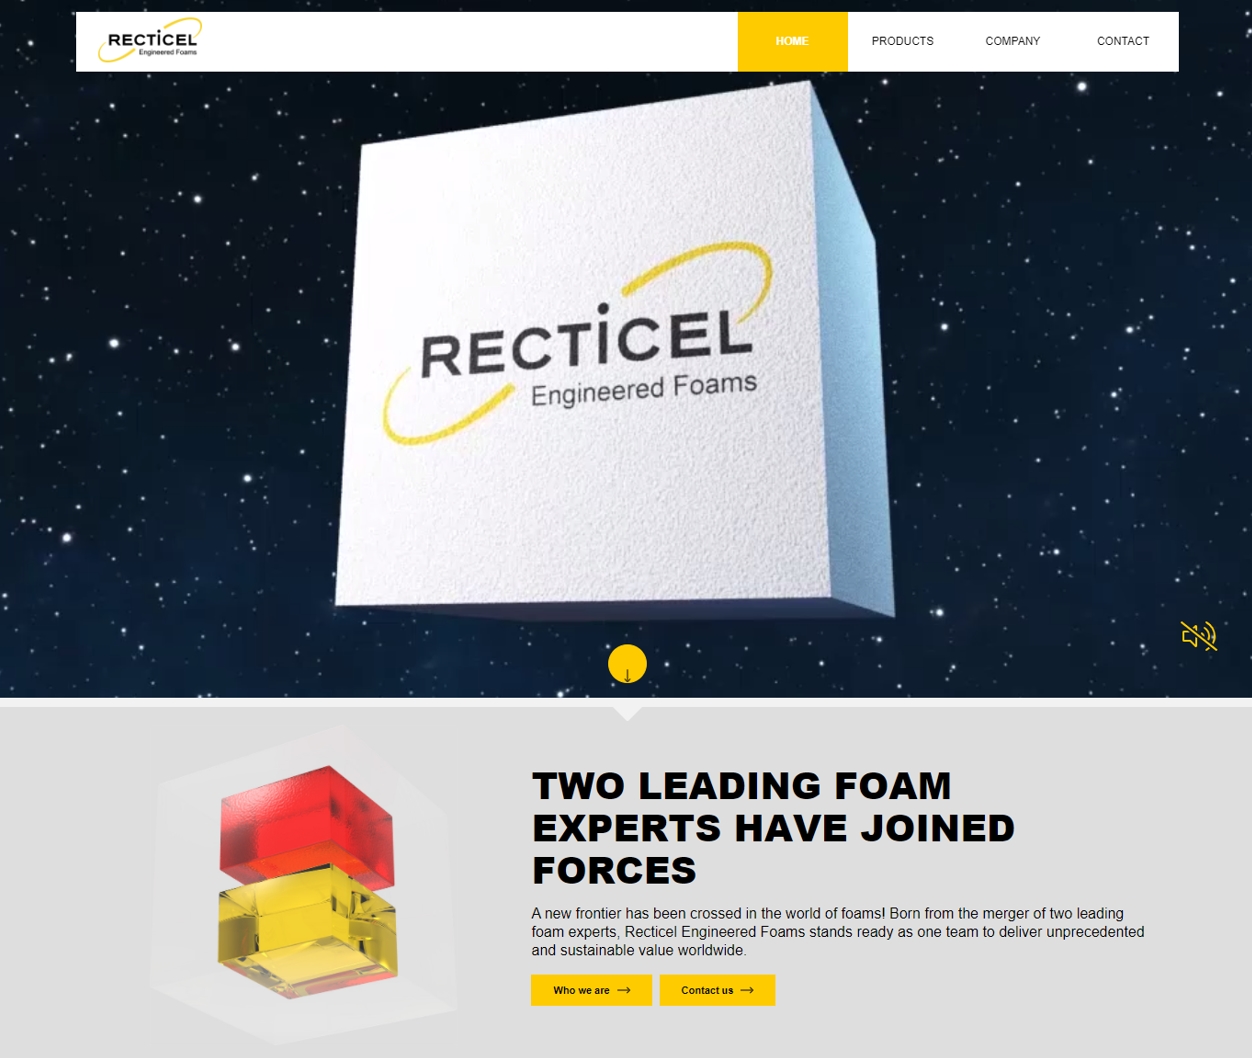 Recticel_Engineered_Foams_homepage.JPG